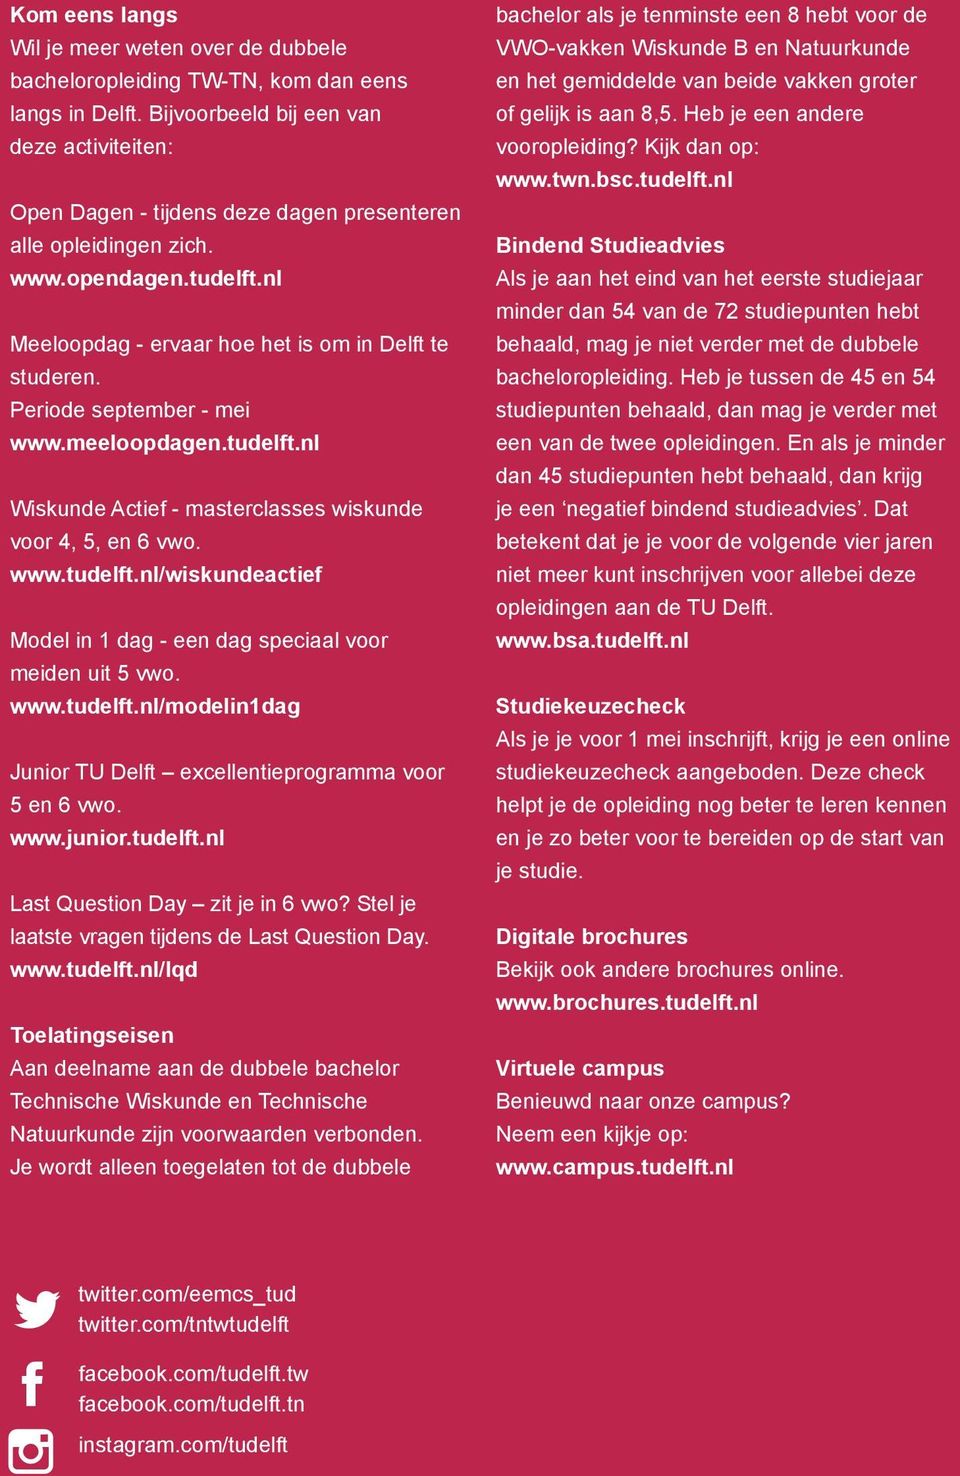 Periode september - mei www.meeloopdagen.tudelft.nl Wiskunde Actief - masterclasses wiskunde voor 4, 5, en 6 vwo. www.tudelft.nl/wiskundeactief Model in 1 dag - een dag speciaal voor meiden uit 5 vwo.